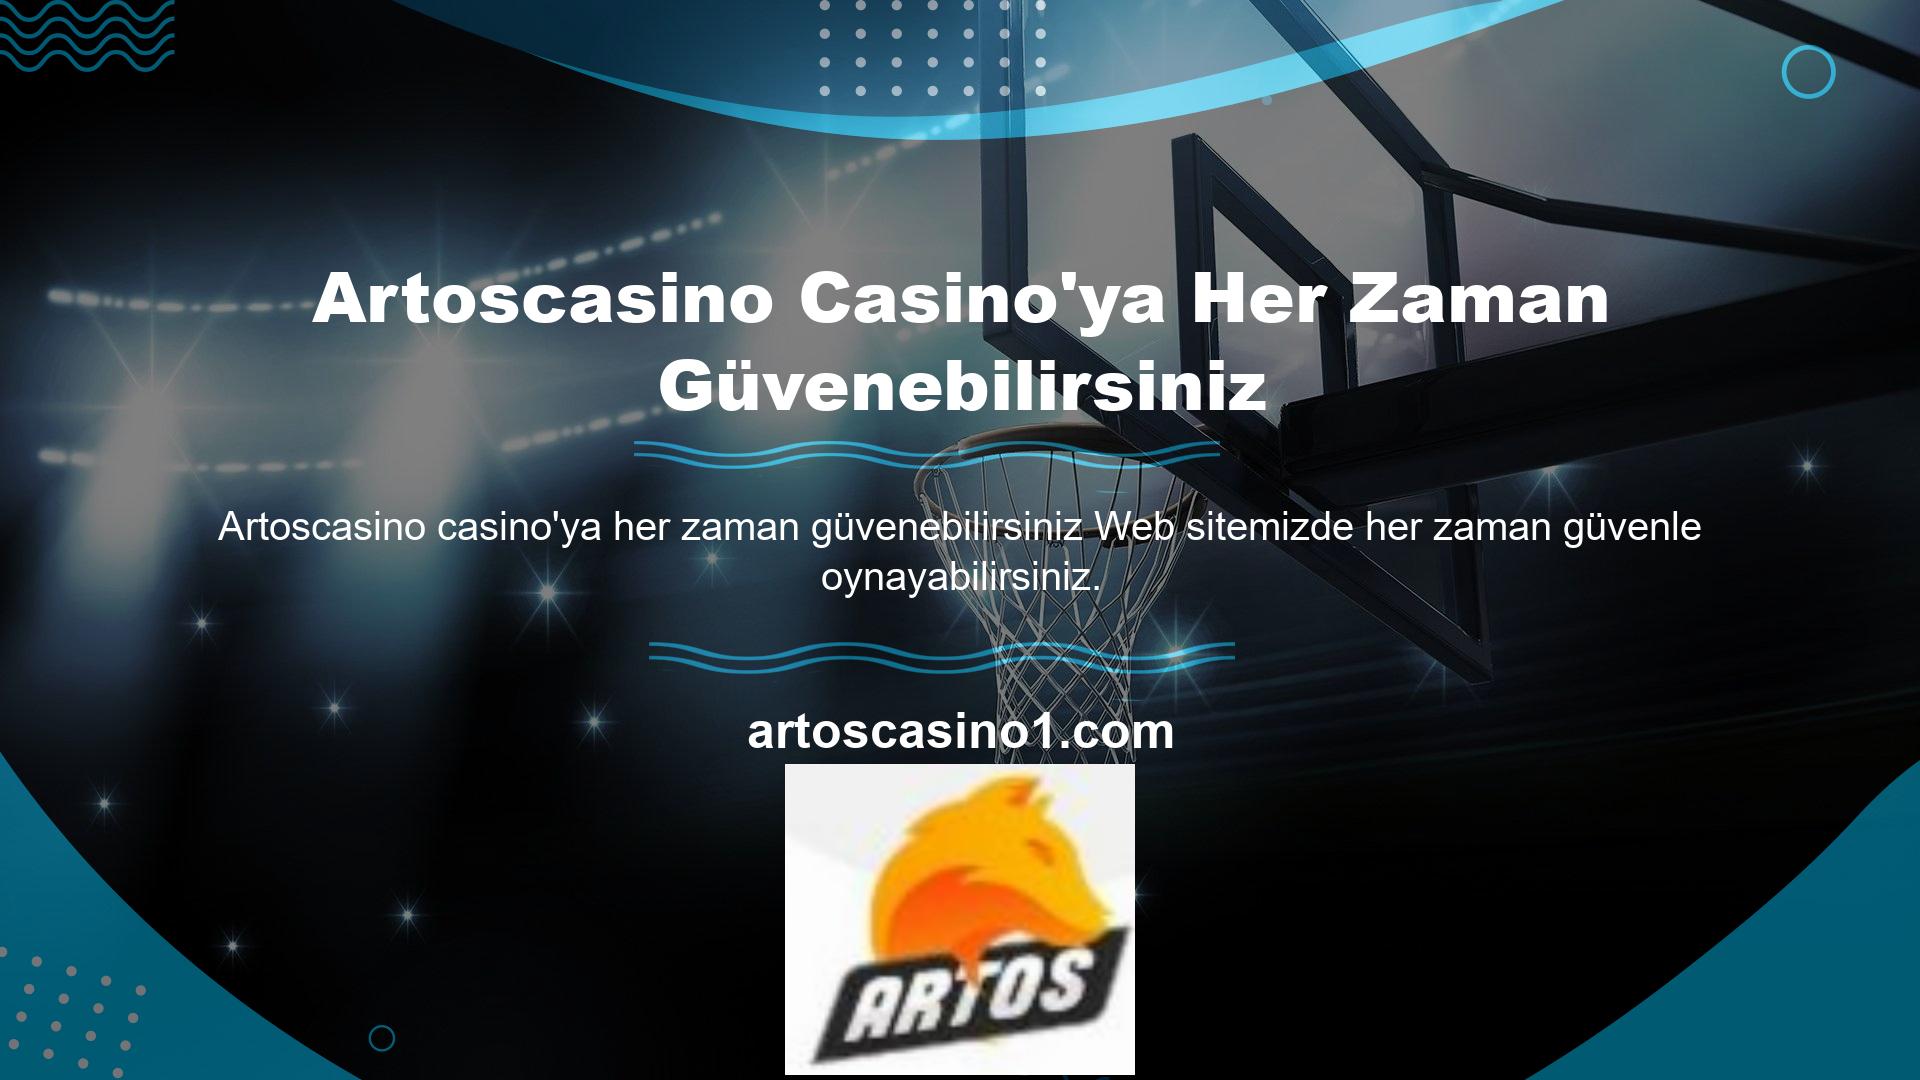 Artoscasino Casino profesyonel bir ekiple çalışmaktadır